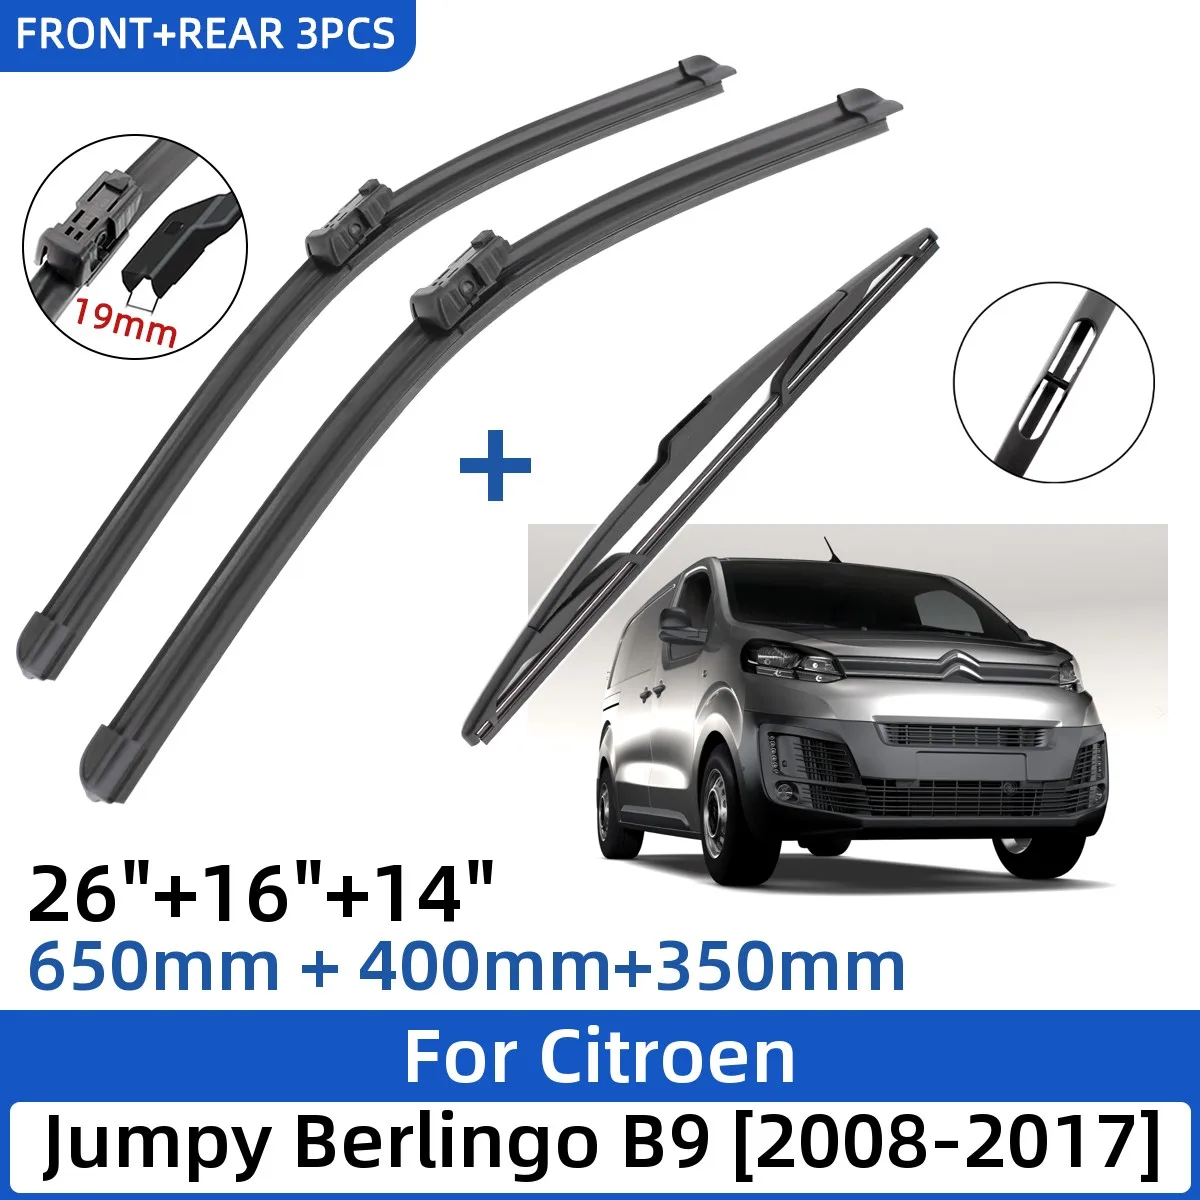 

For Citroen Jumpy Berlingo B9 2008-2017 26"+16"+14" Front Rear Wiper Blades Windshield Windscreen Window Cutter Accessories 2017